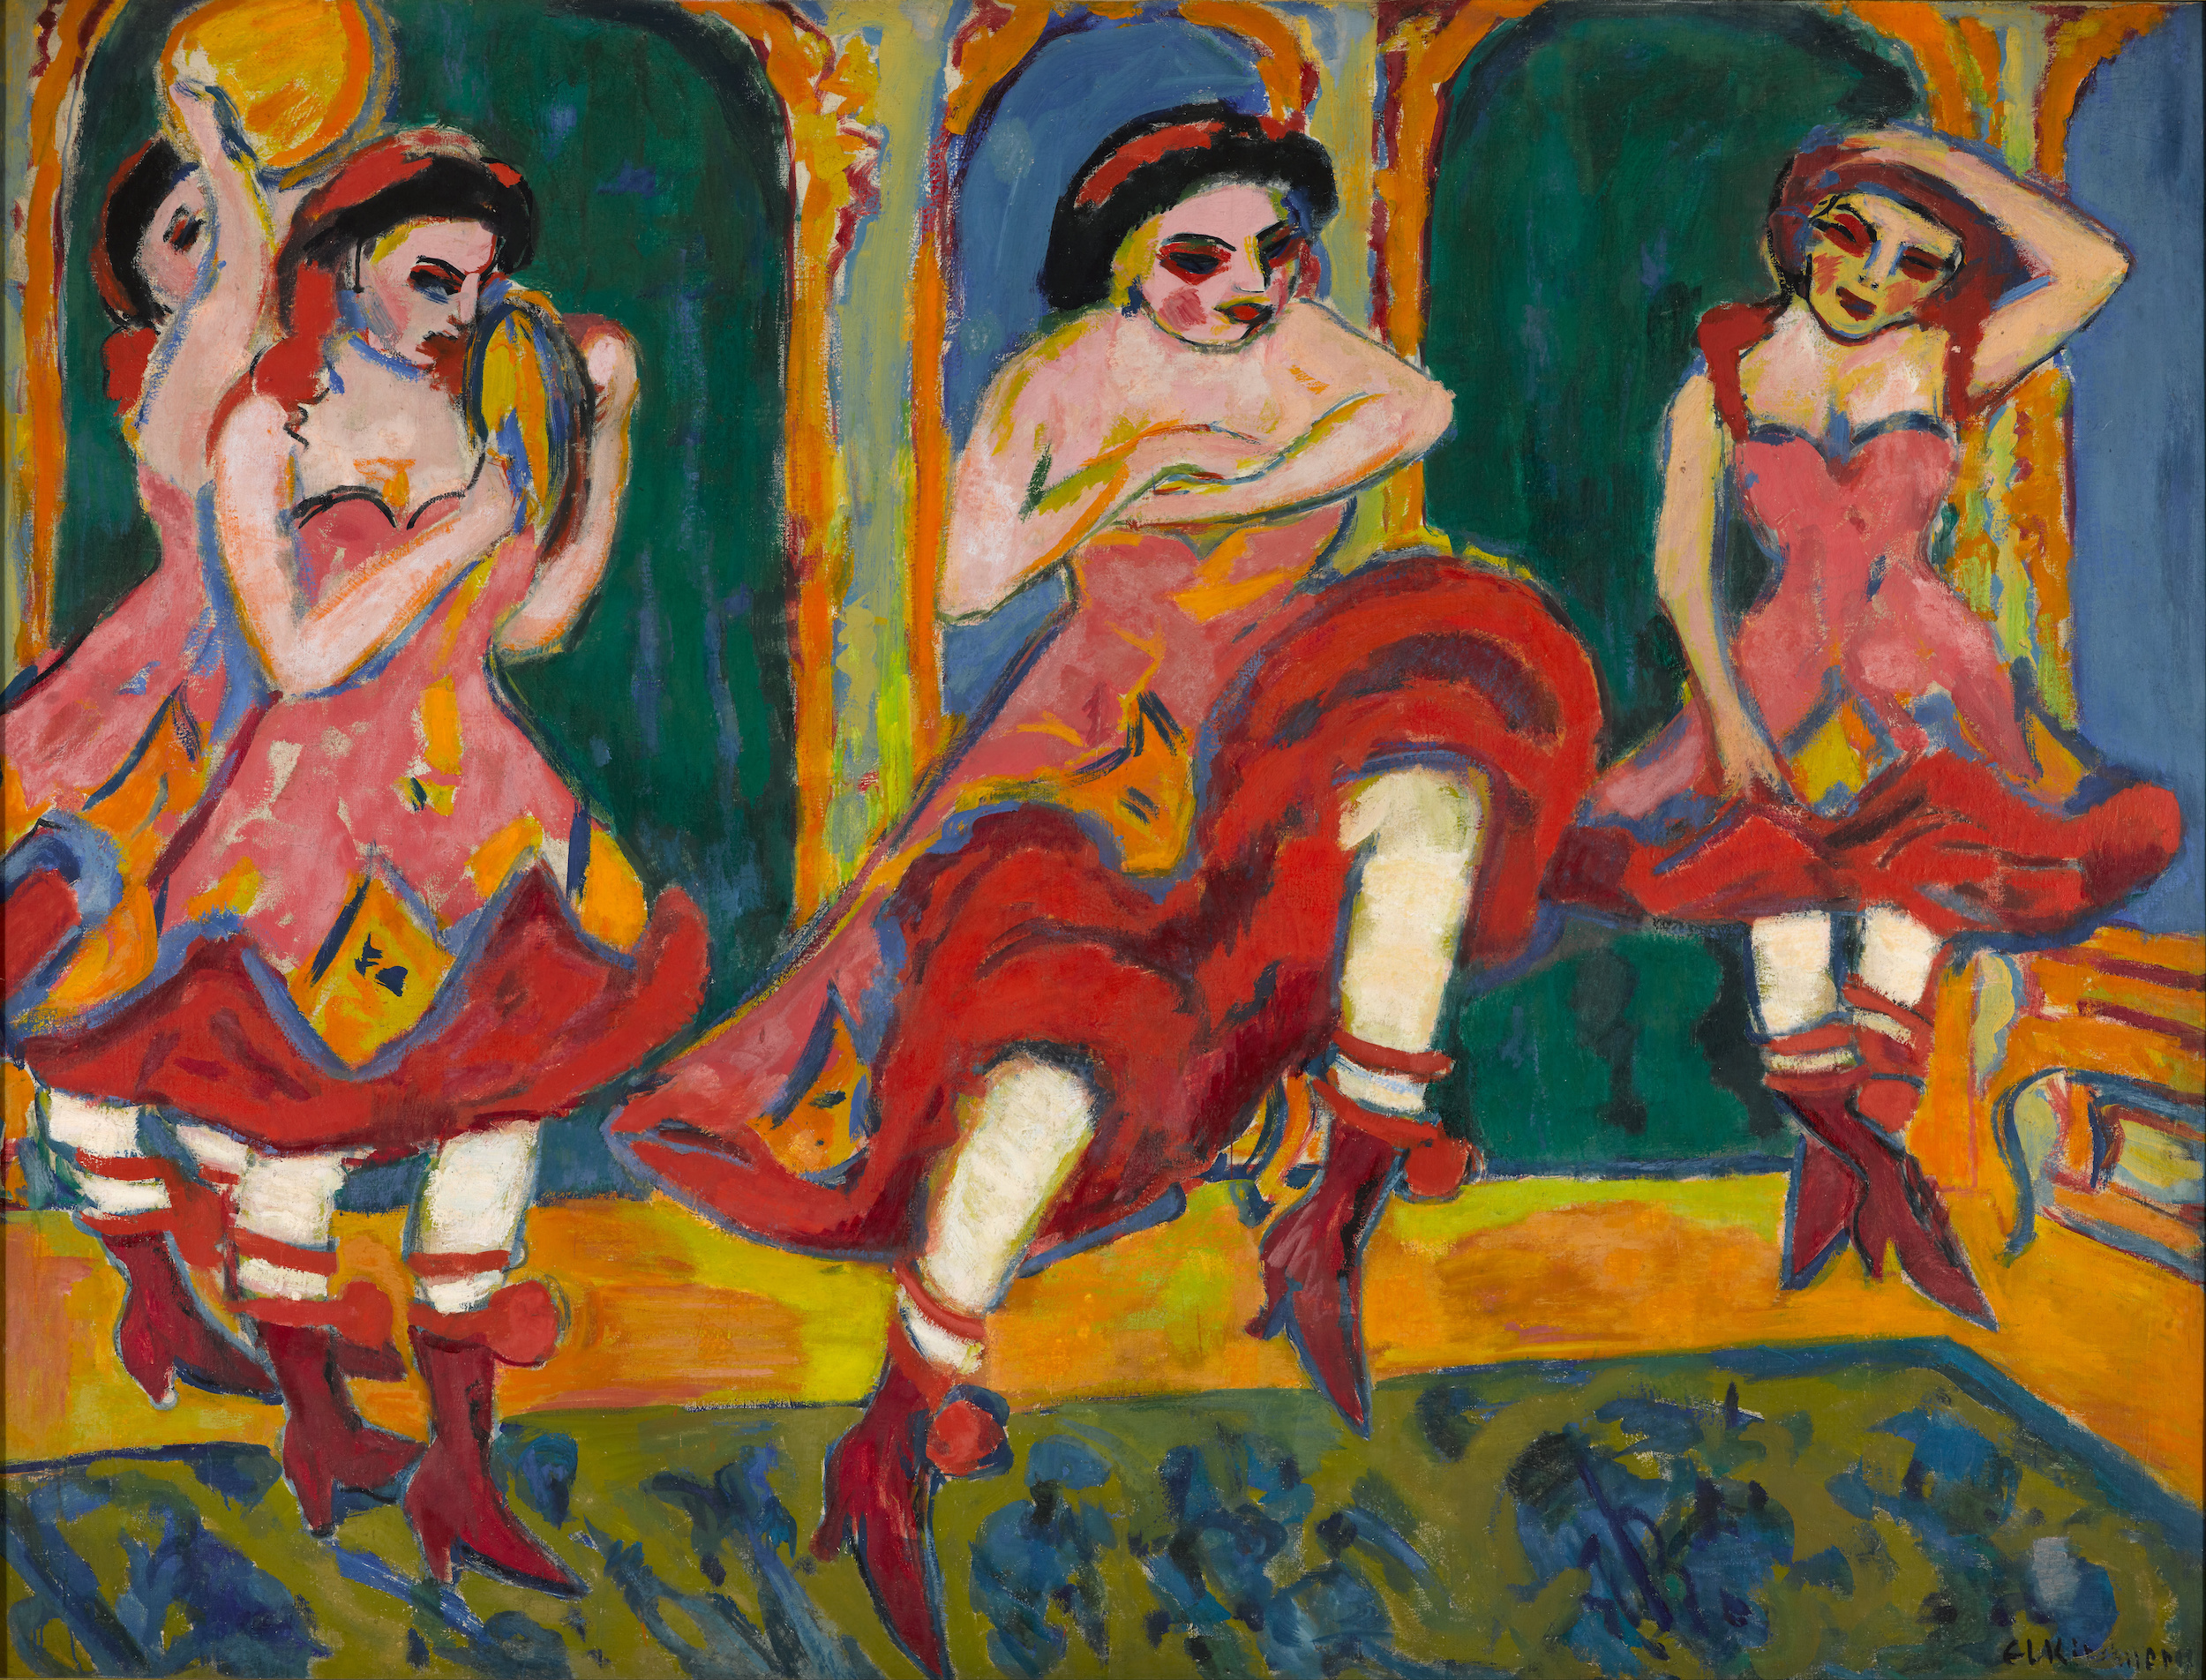  Csardasdanseressen  by Ernst Ludwig Kirchner - 1908-1920 - 223.2 x 172.2 cm Kunstmuseum Den Haag